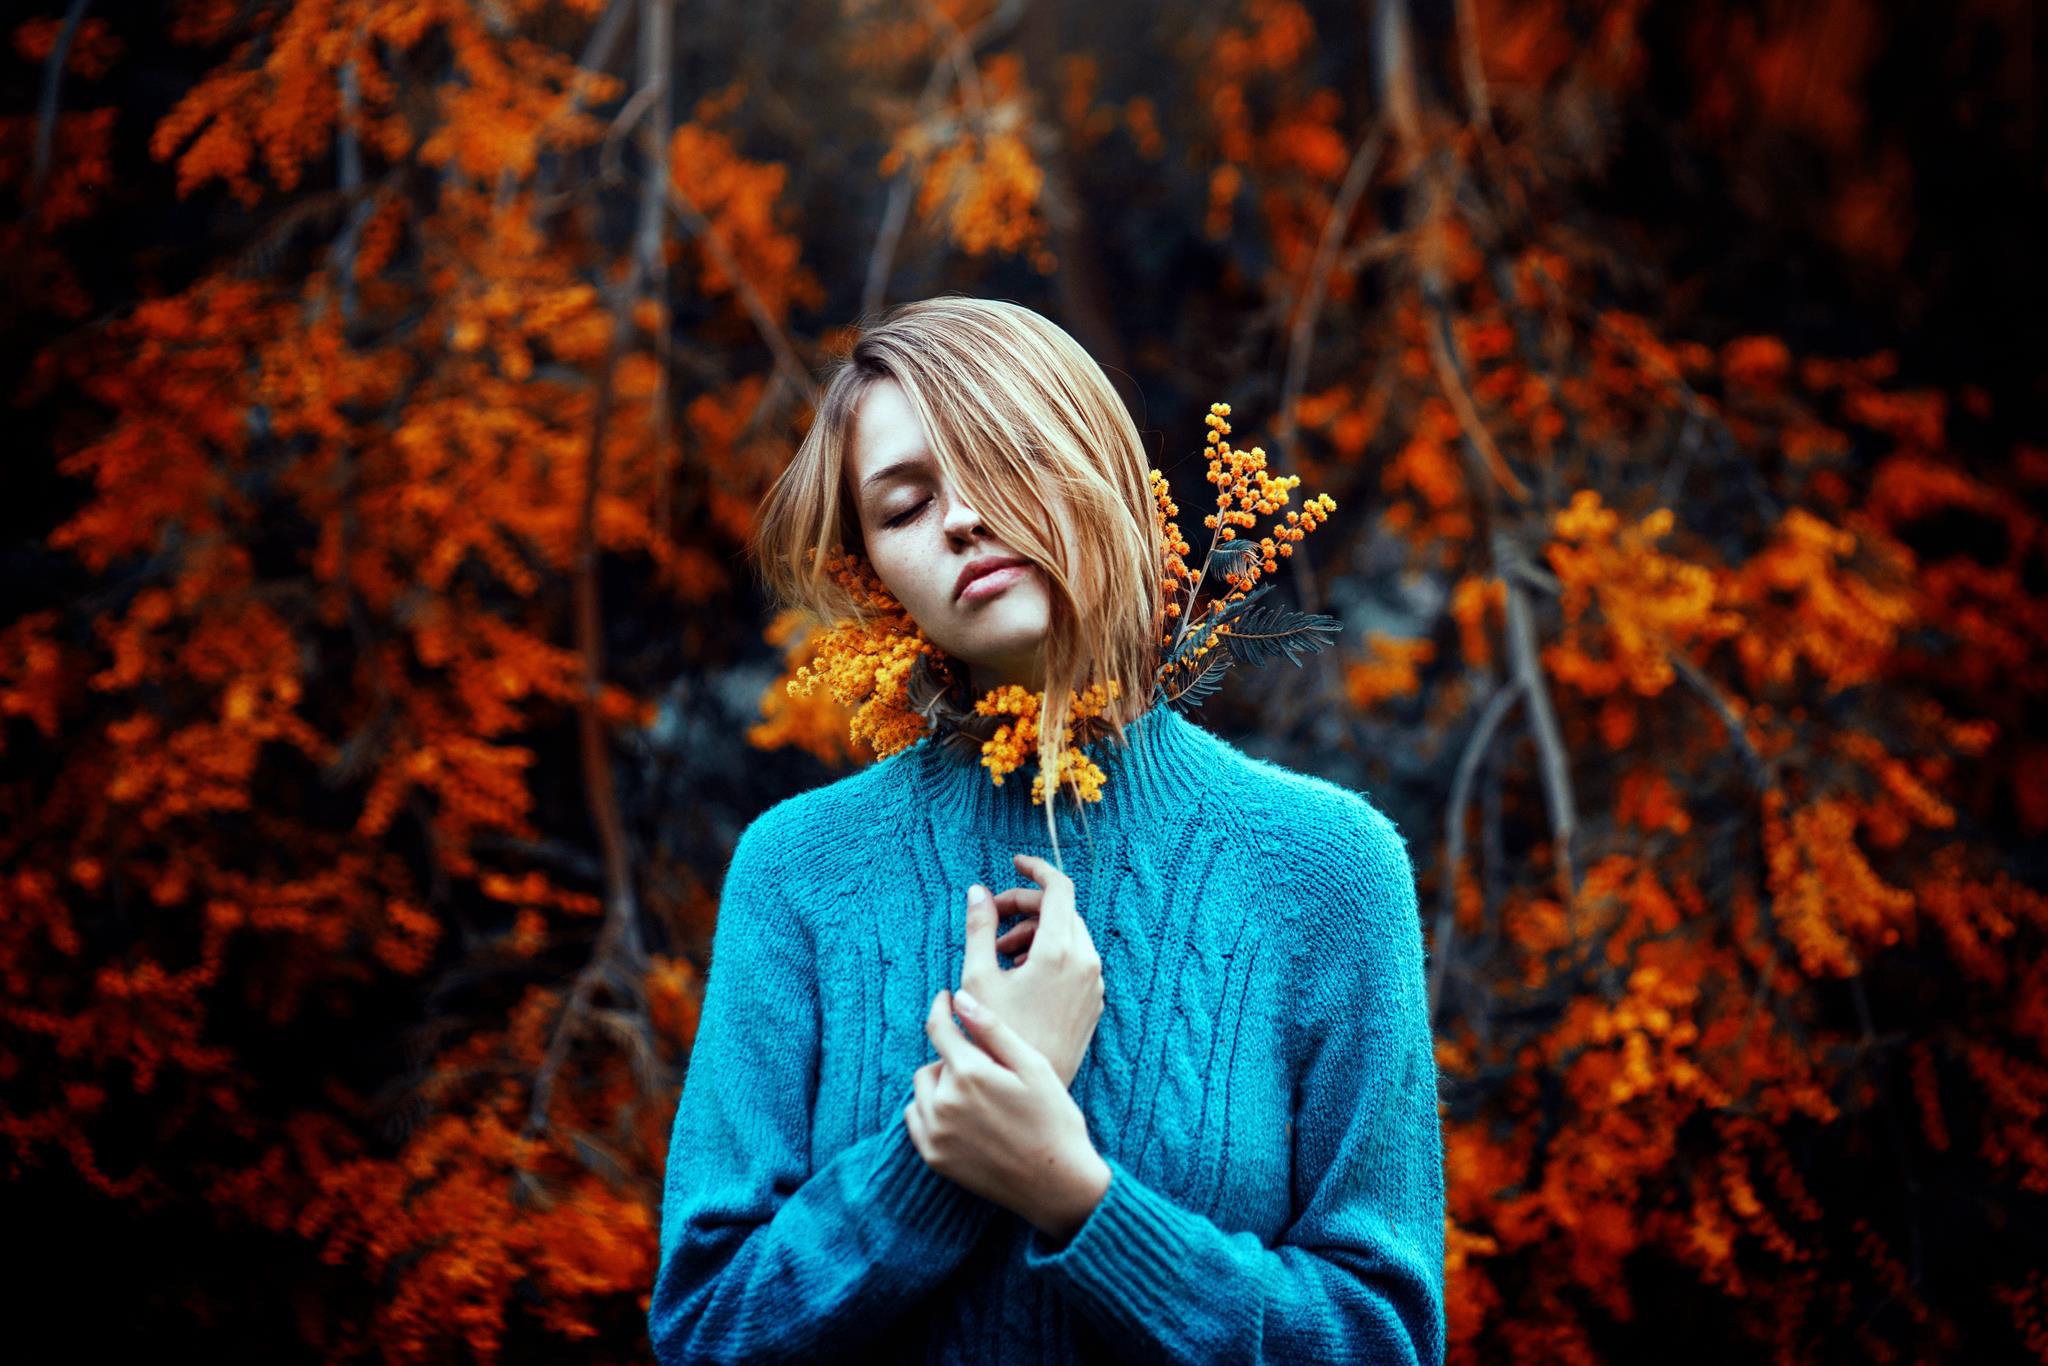 Ronny Garcia Women Model Closed Eyes Blonde Women Outdoors Blue Sweater Hair In Face 2048x1366